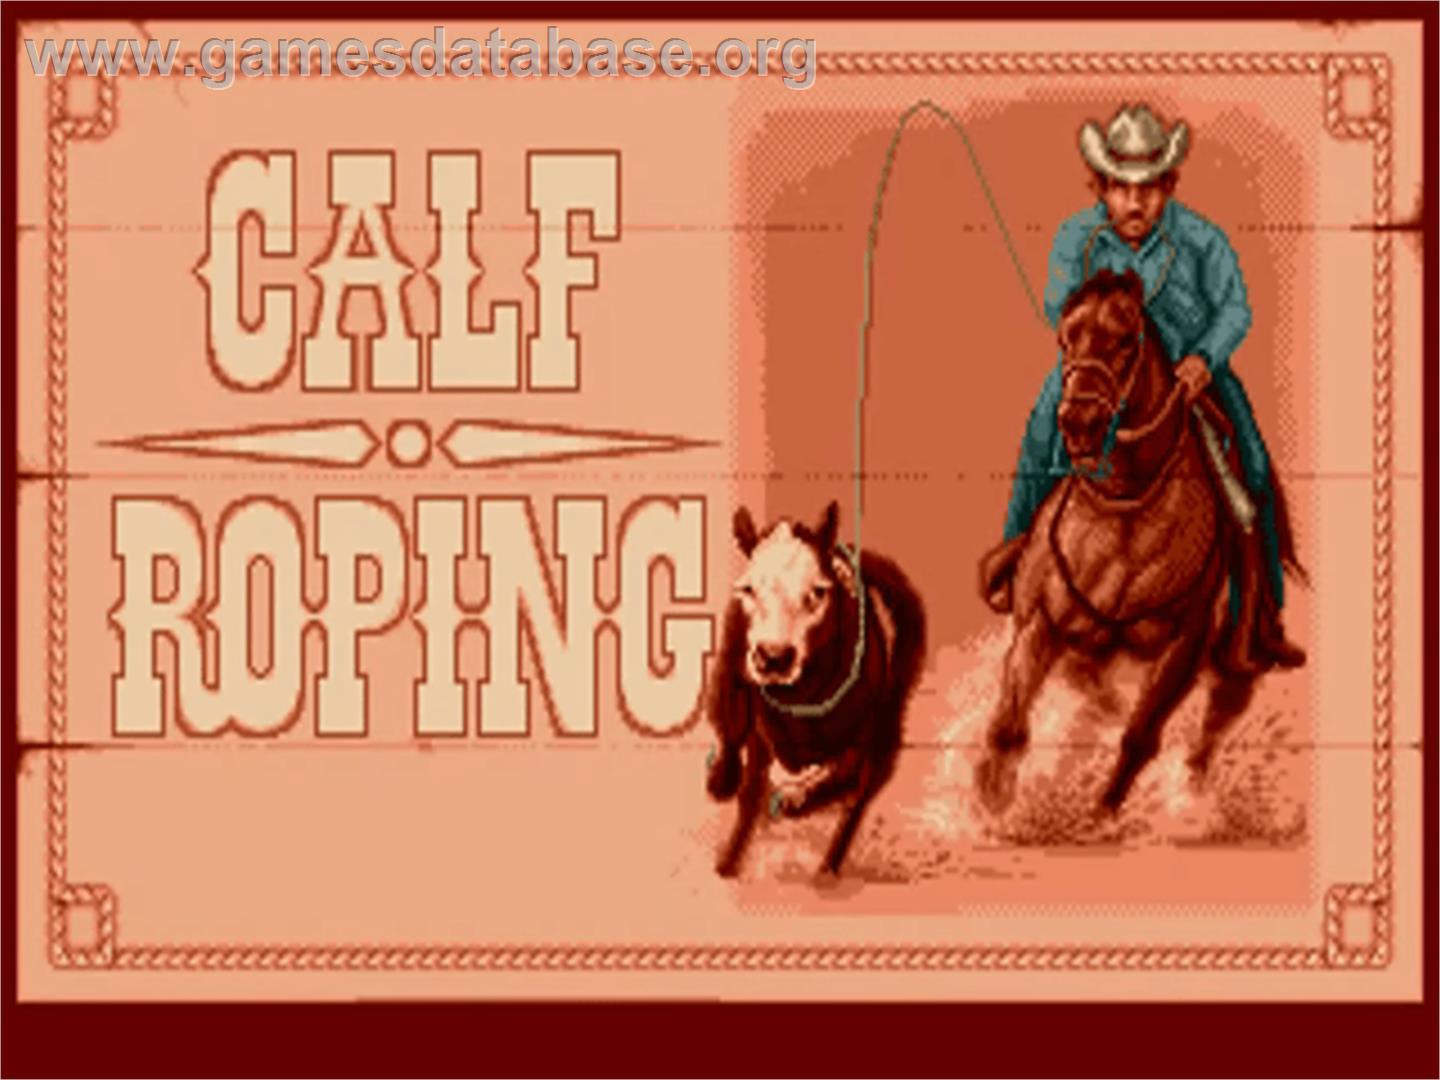 Buffalo Bill's Wild West Show - Commodore Amiga - Artwork - In Game